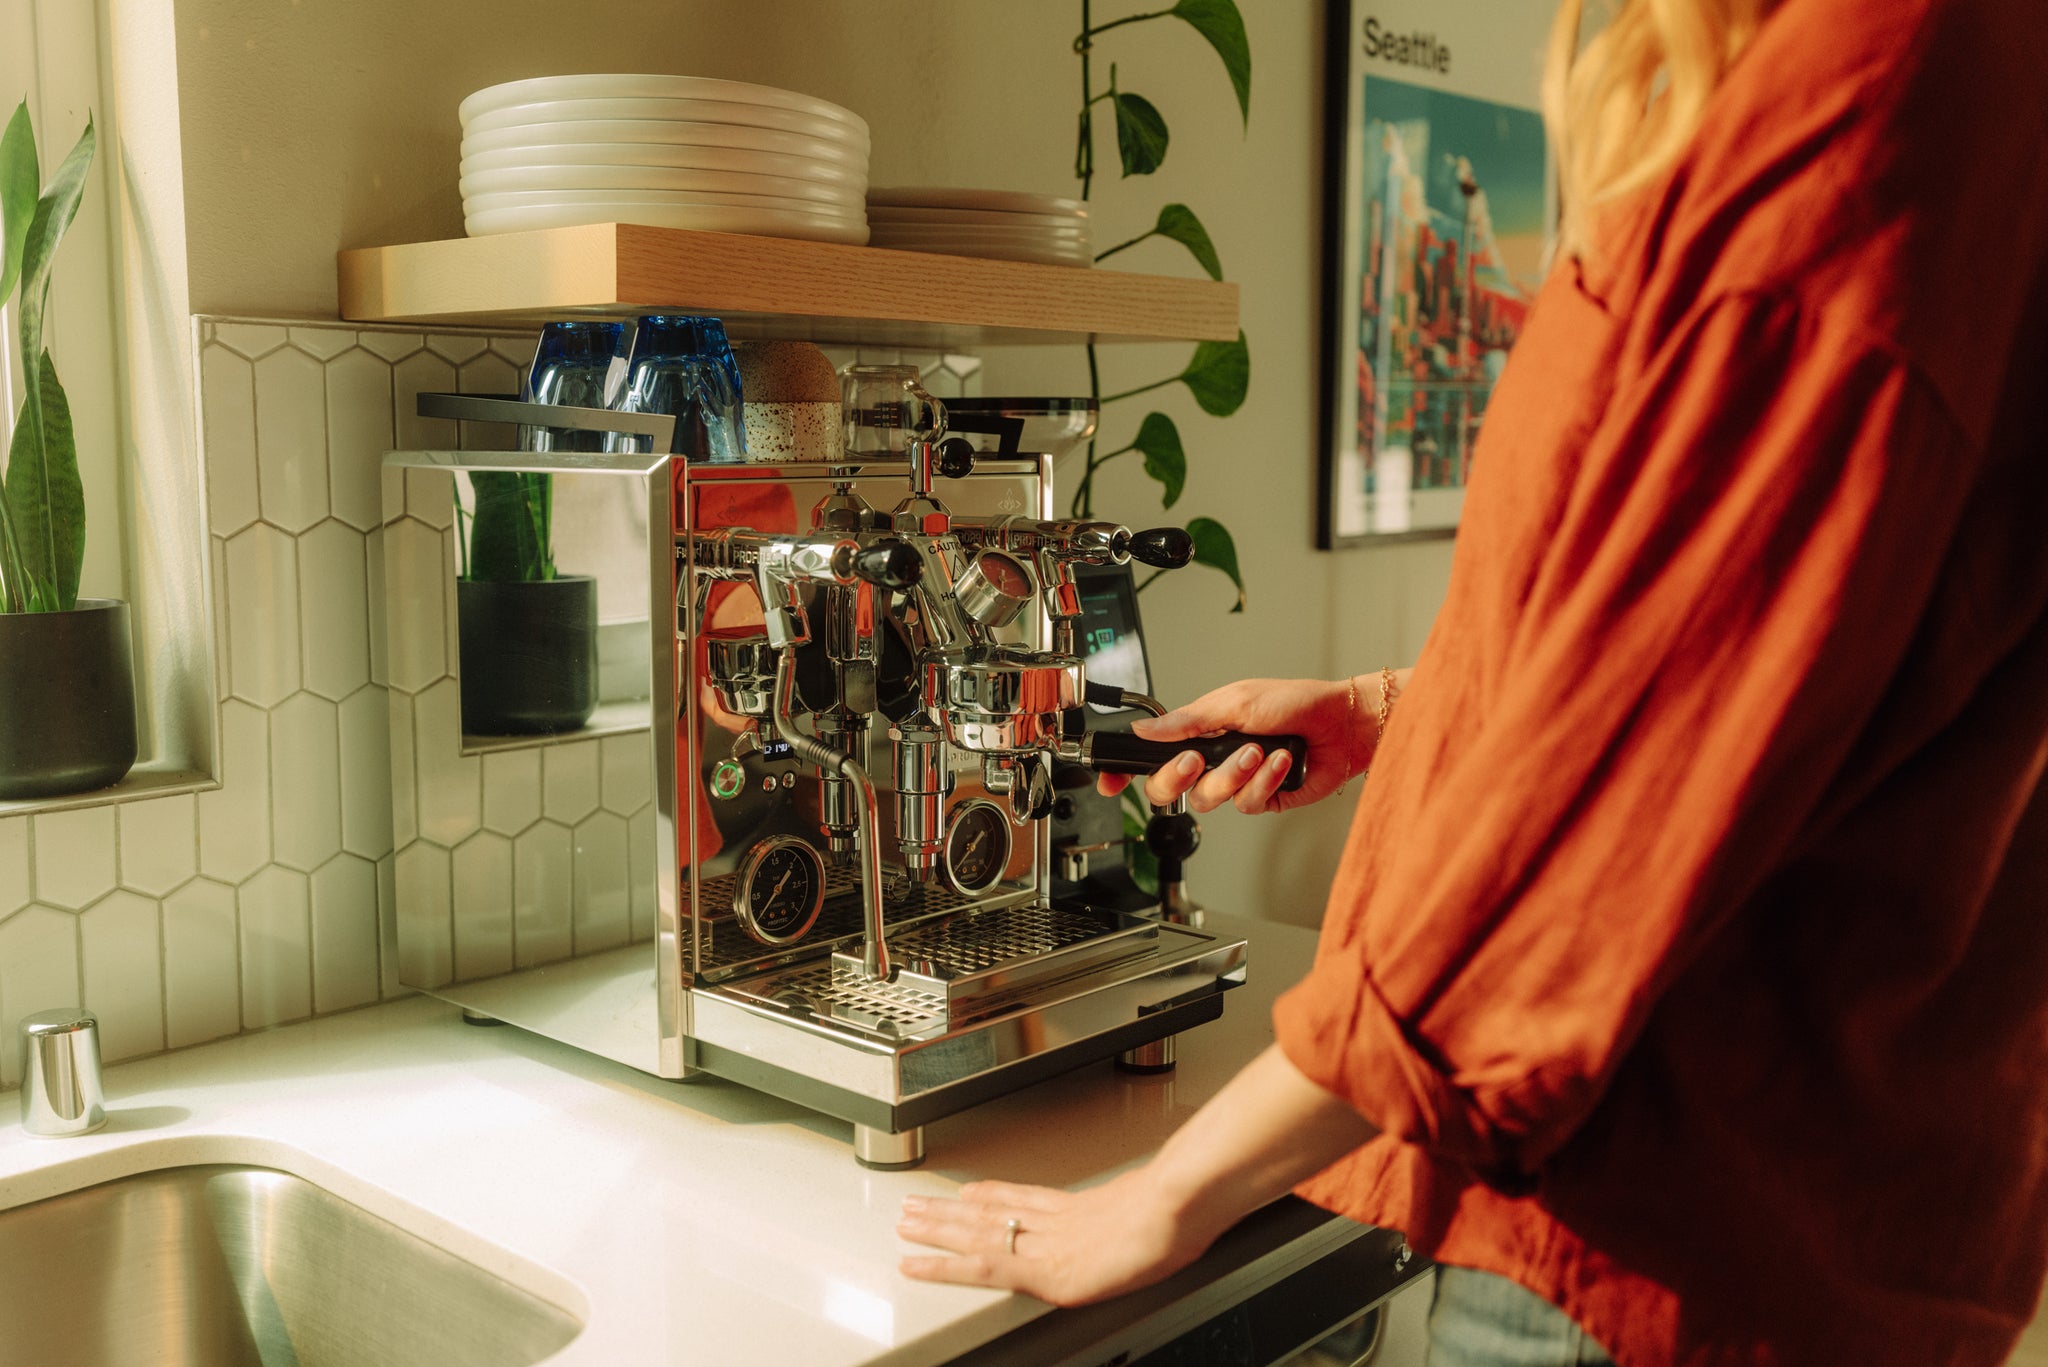 NEW: The Profitec Drive Espresso Machine